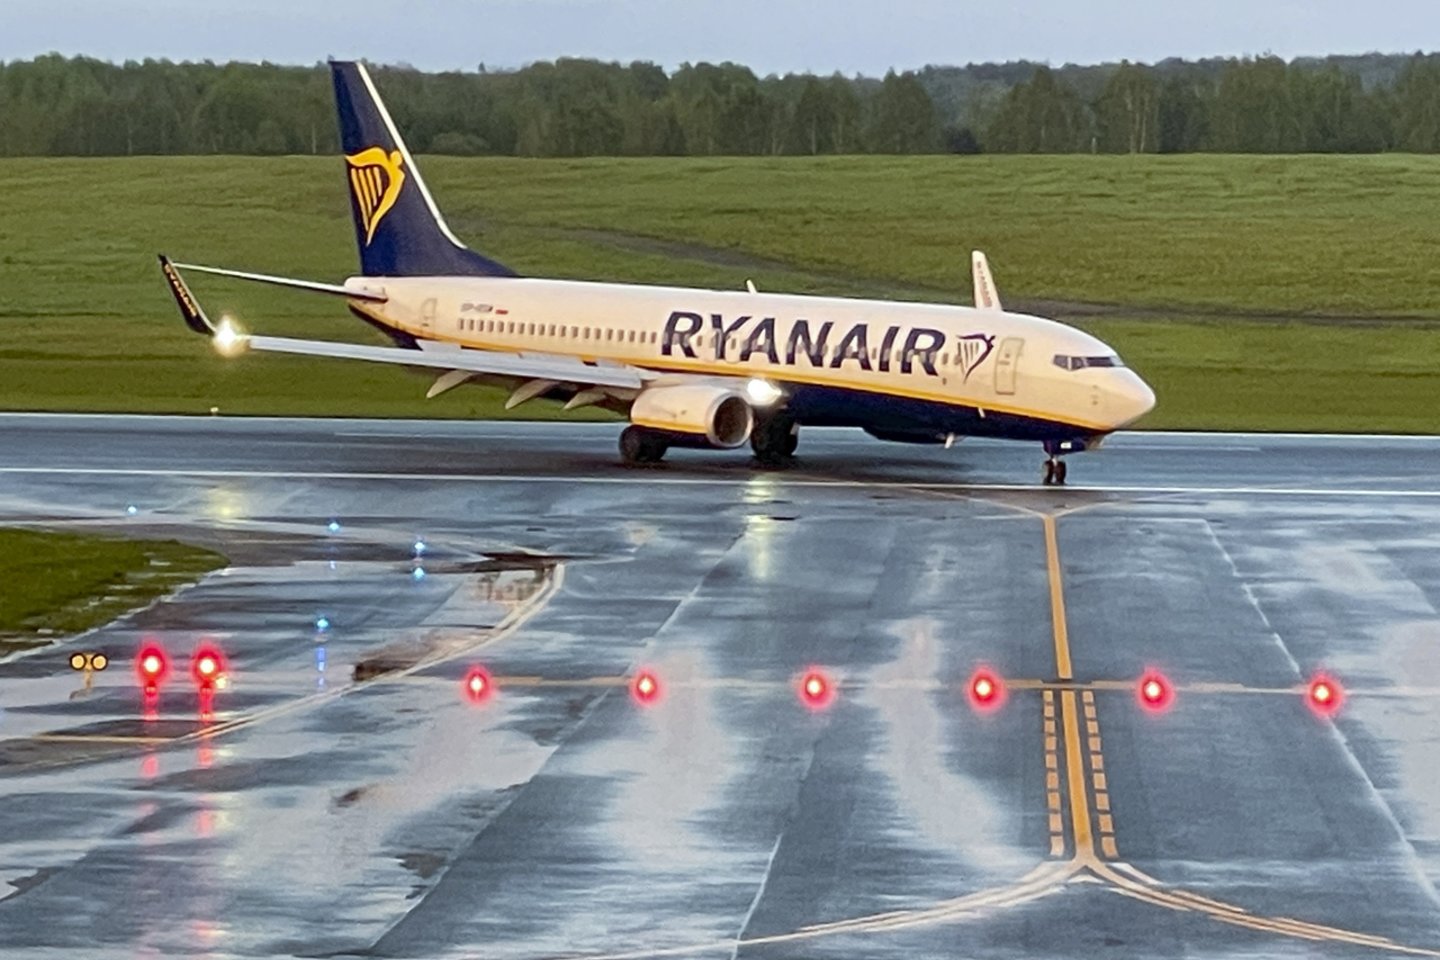 Lėktuvas Ryanair grįžęs iš Minsko, kur buvo priverstinai nutupdytas.<br>V.Ščiavinsko nuotr.